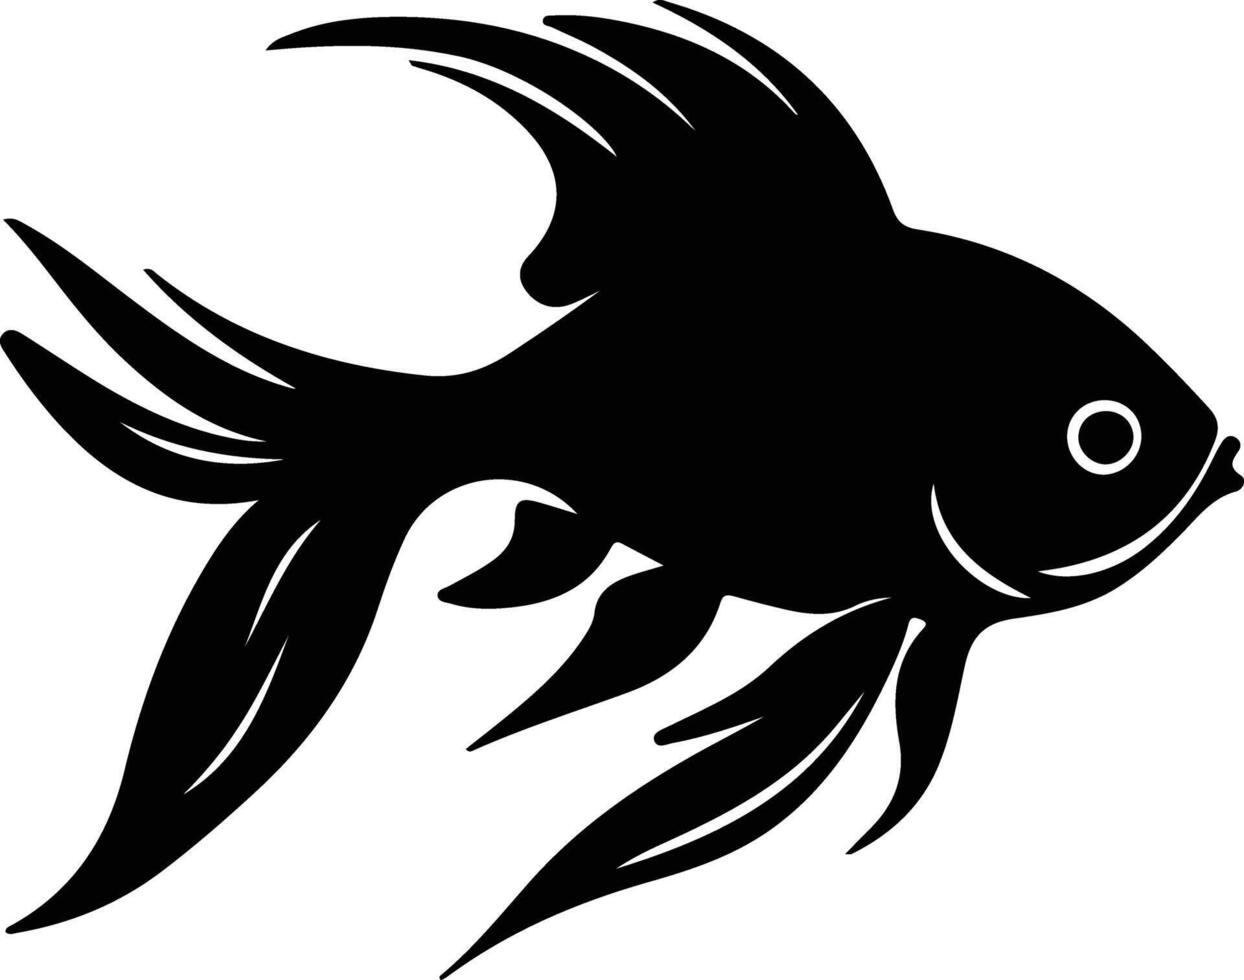 pez de colores negro silueta vector